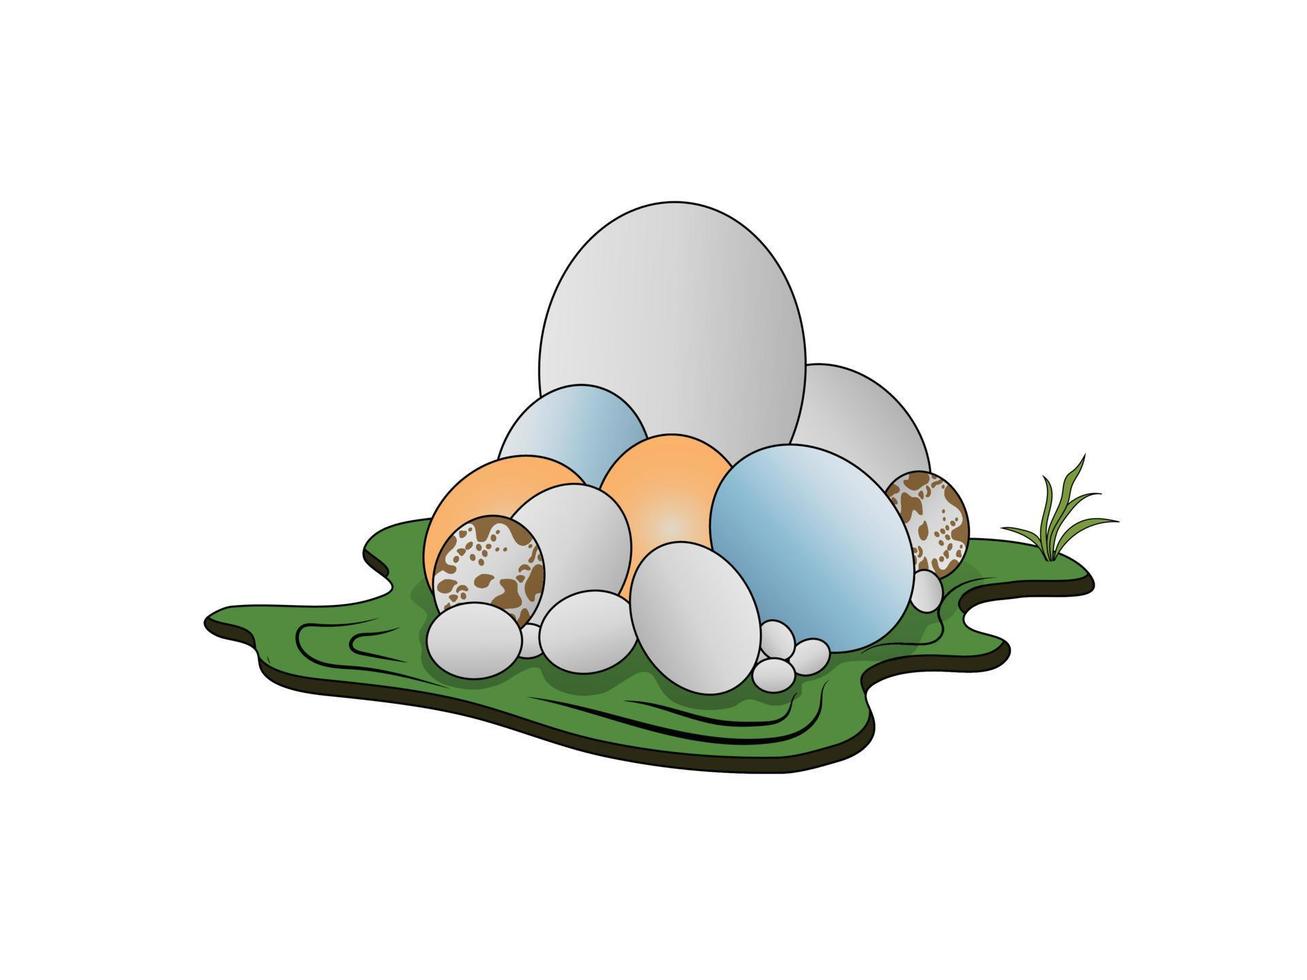 varios tamaños de huevos. huevo de pato, huevo de gallina, huevo de cisne, huevo de lagarto. vector